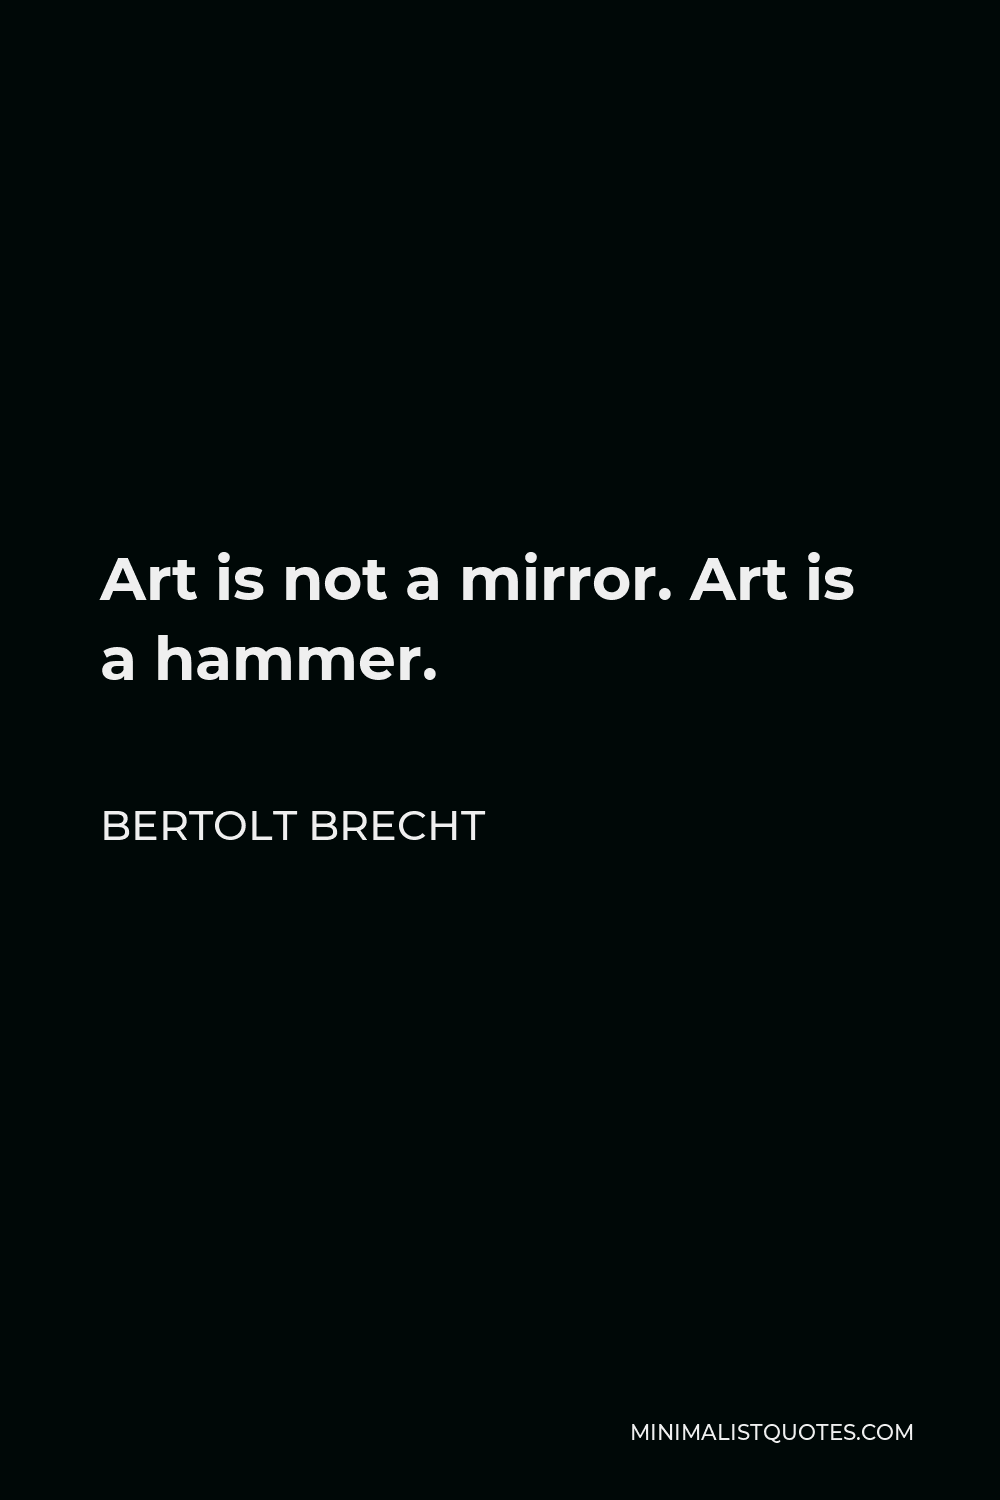 Bertolt Brecht Quote - Art is not a mirror. Art is a hammer.